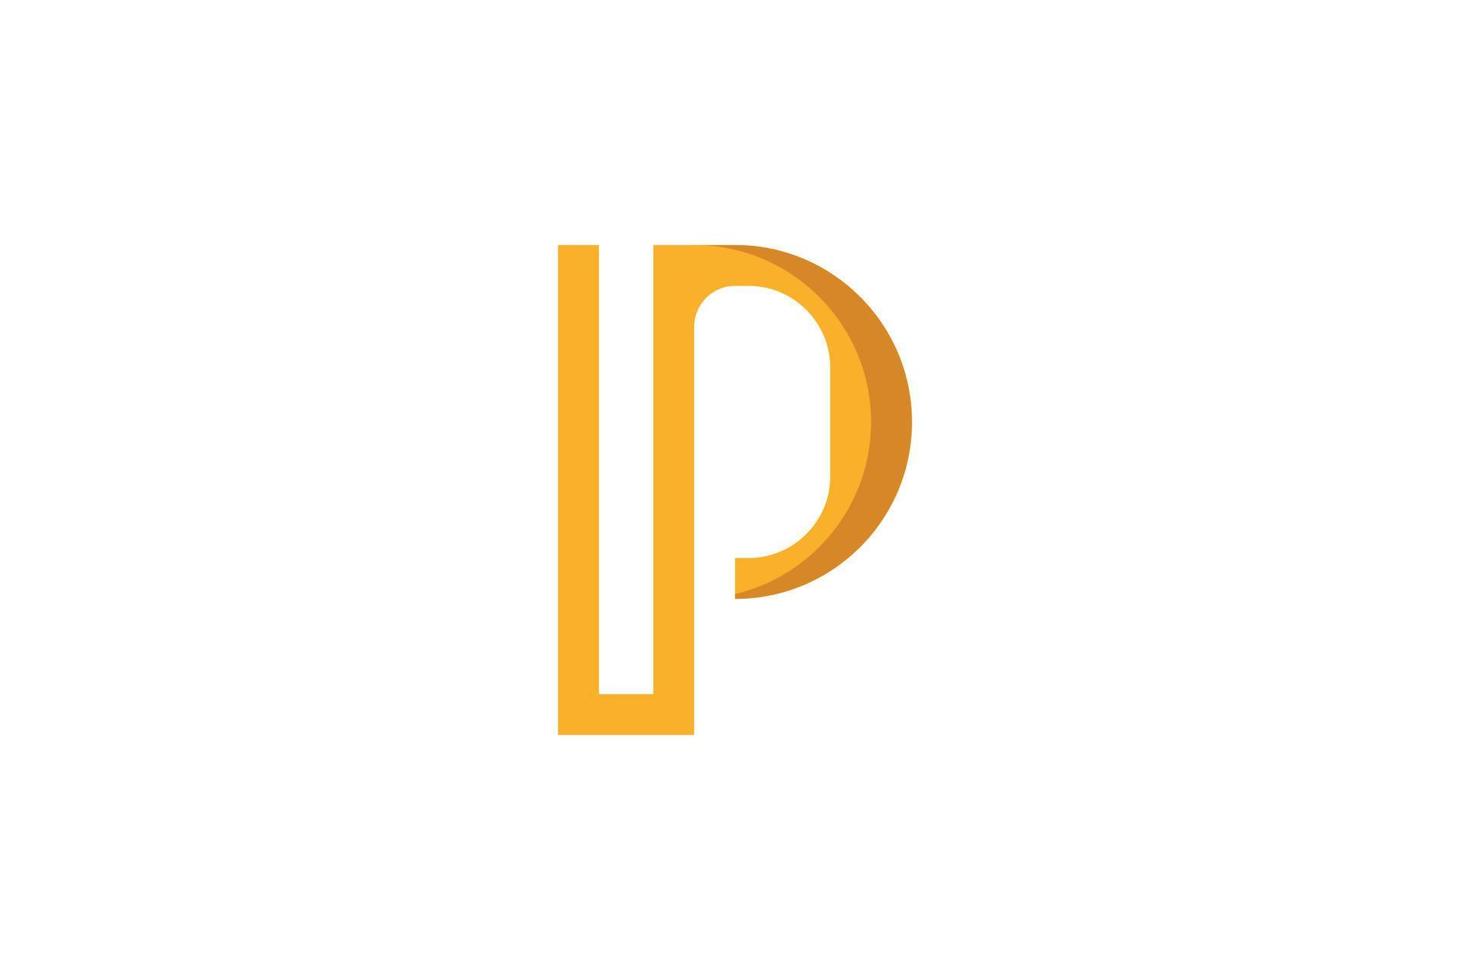 Letter P Modern Logo vector